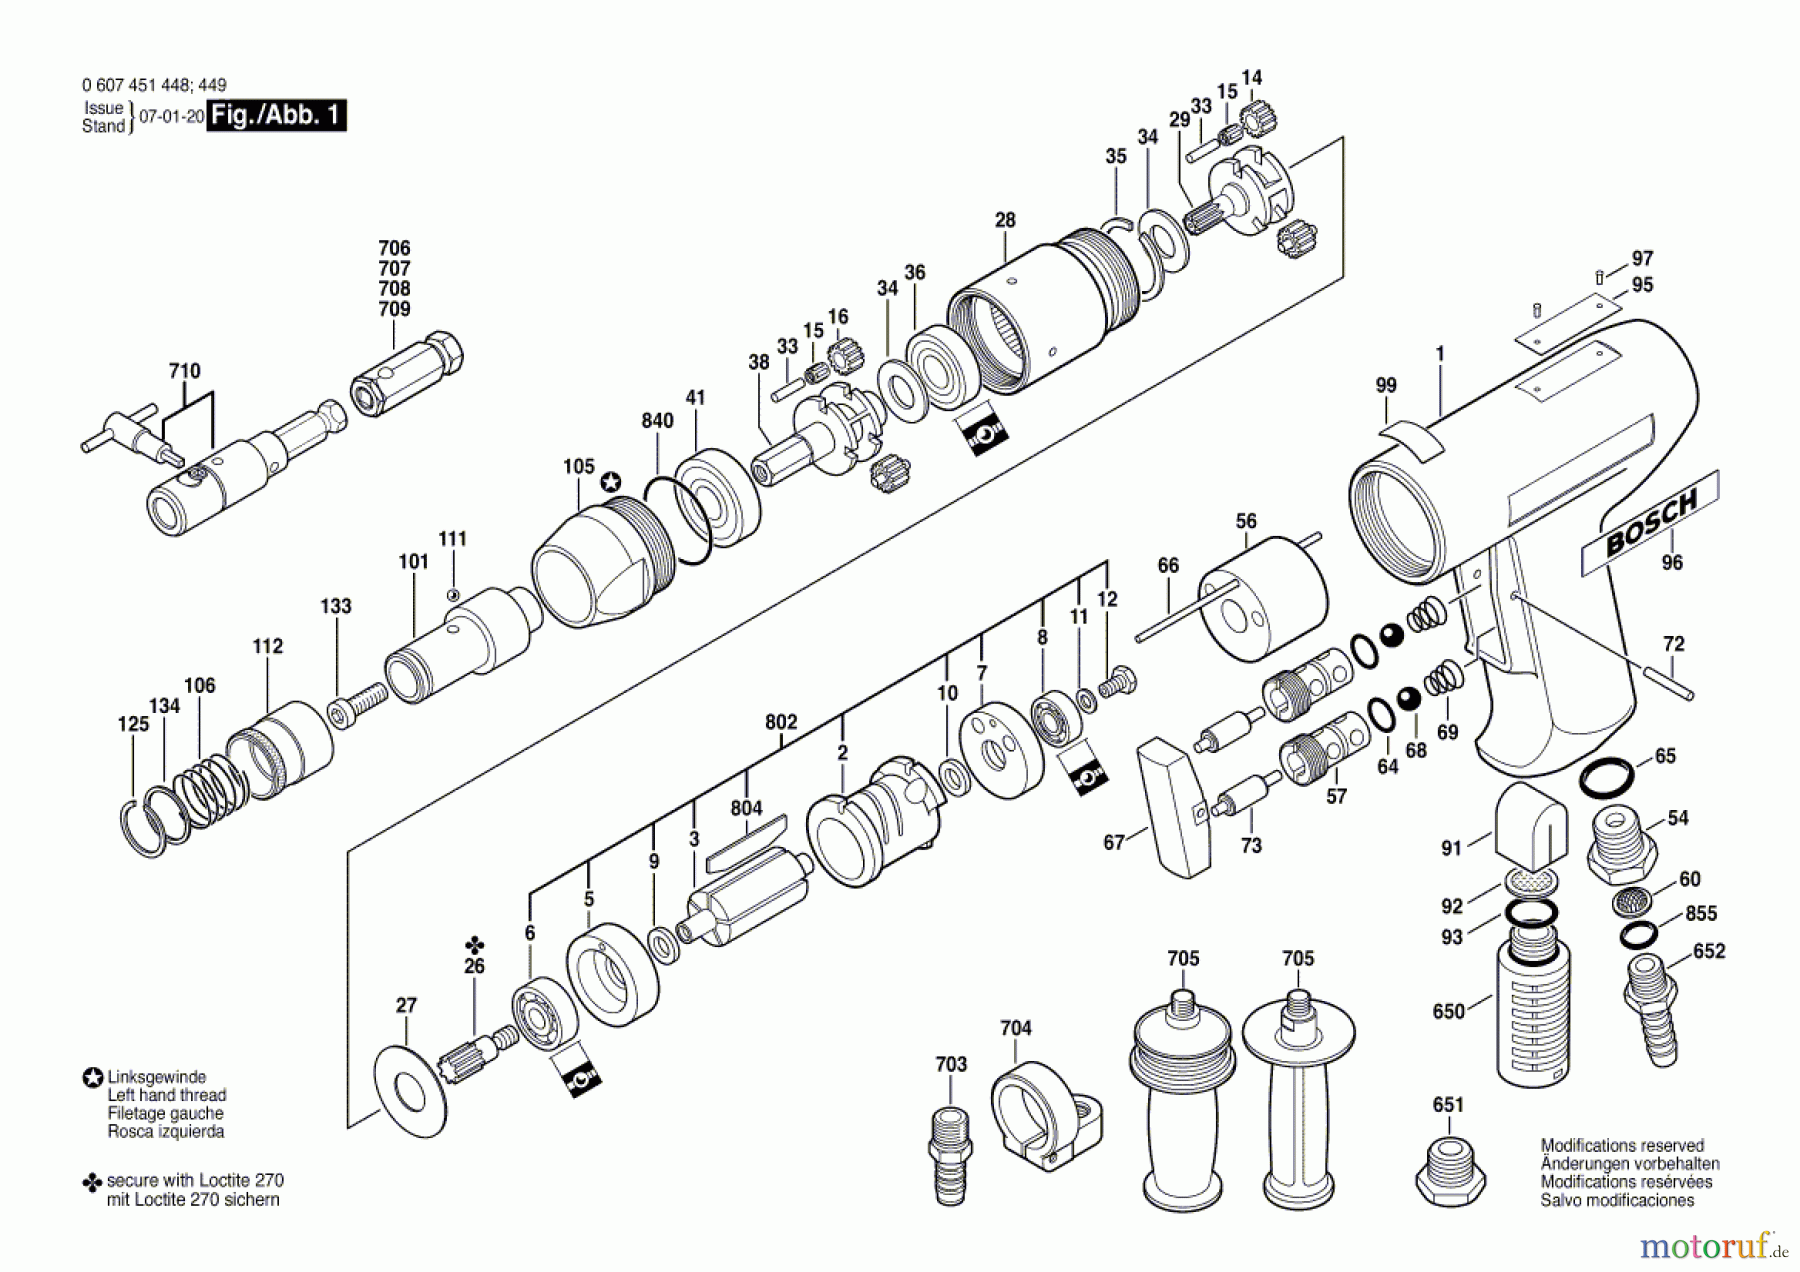  Bosch Werkzeug Gewindeschneider 370 WATT-SERIE Seite 1